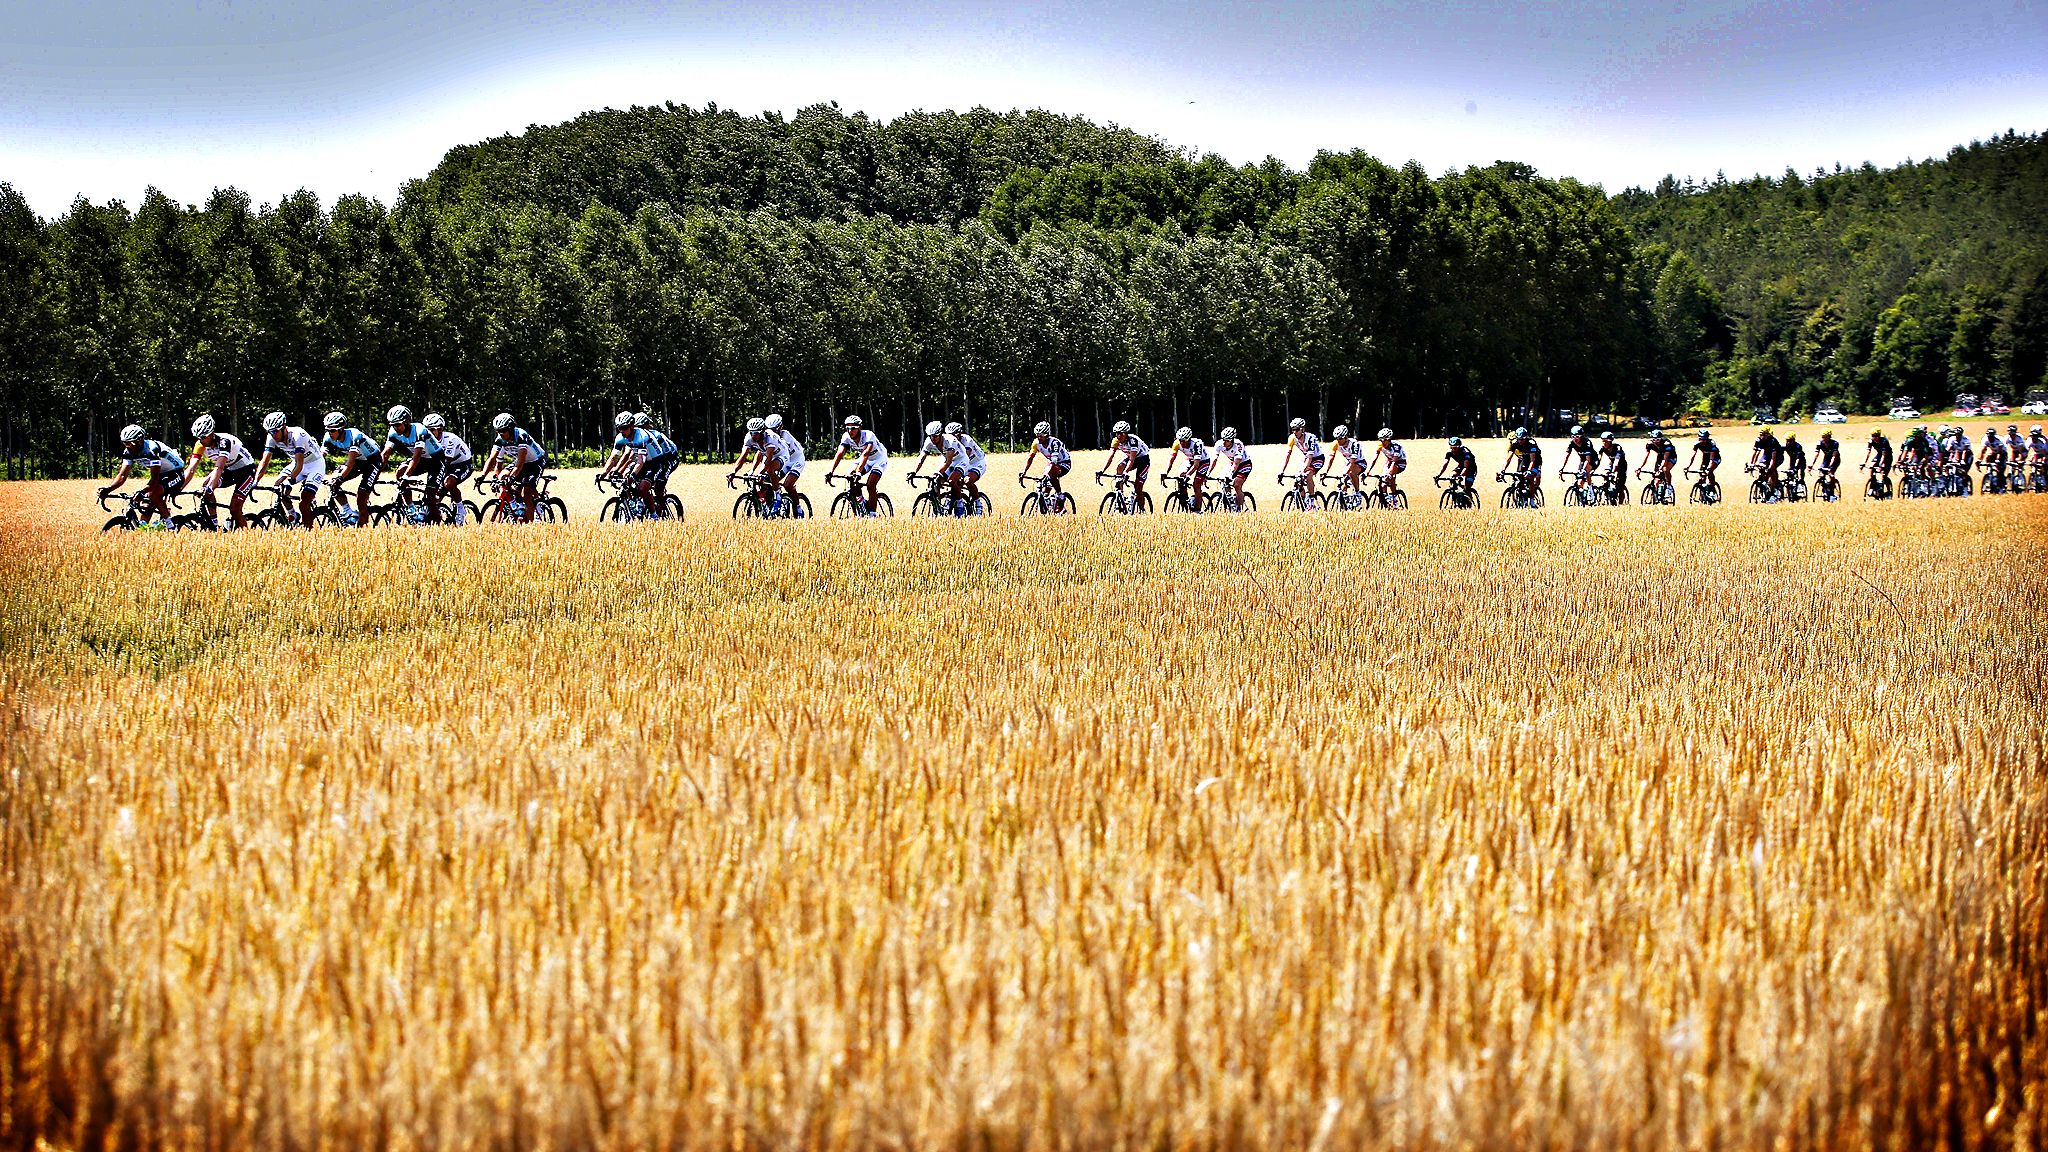 Tour de France FT Photo Diary